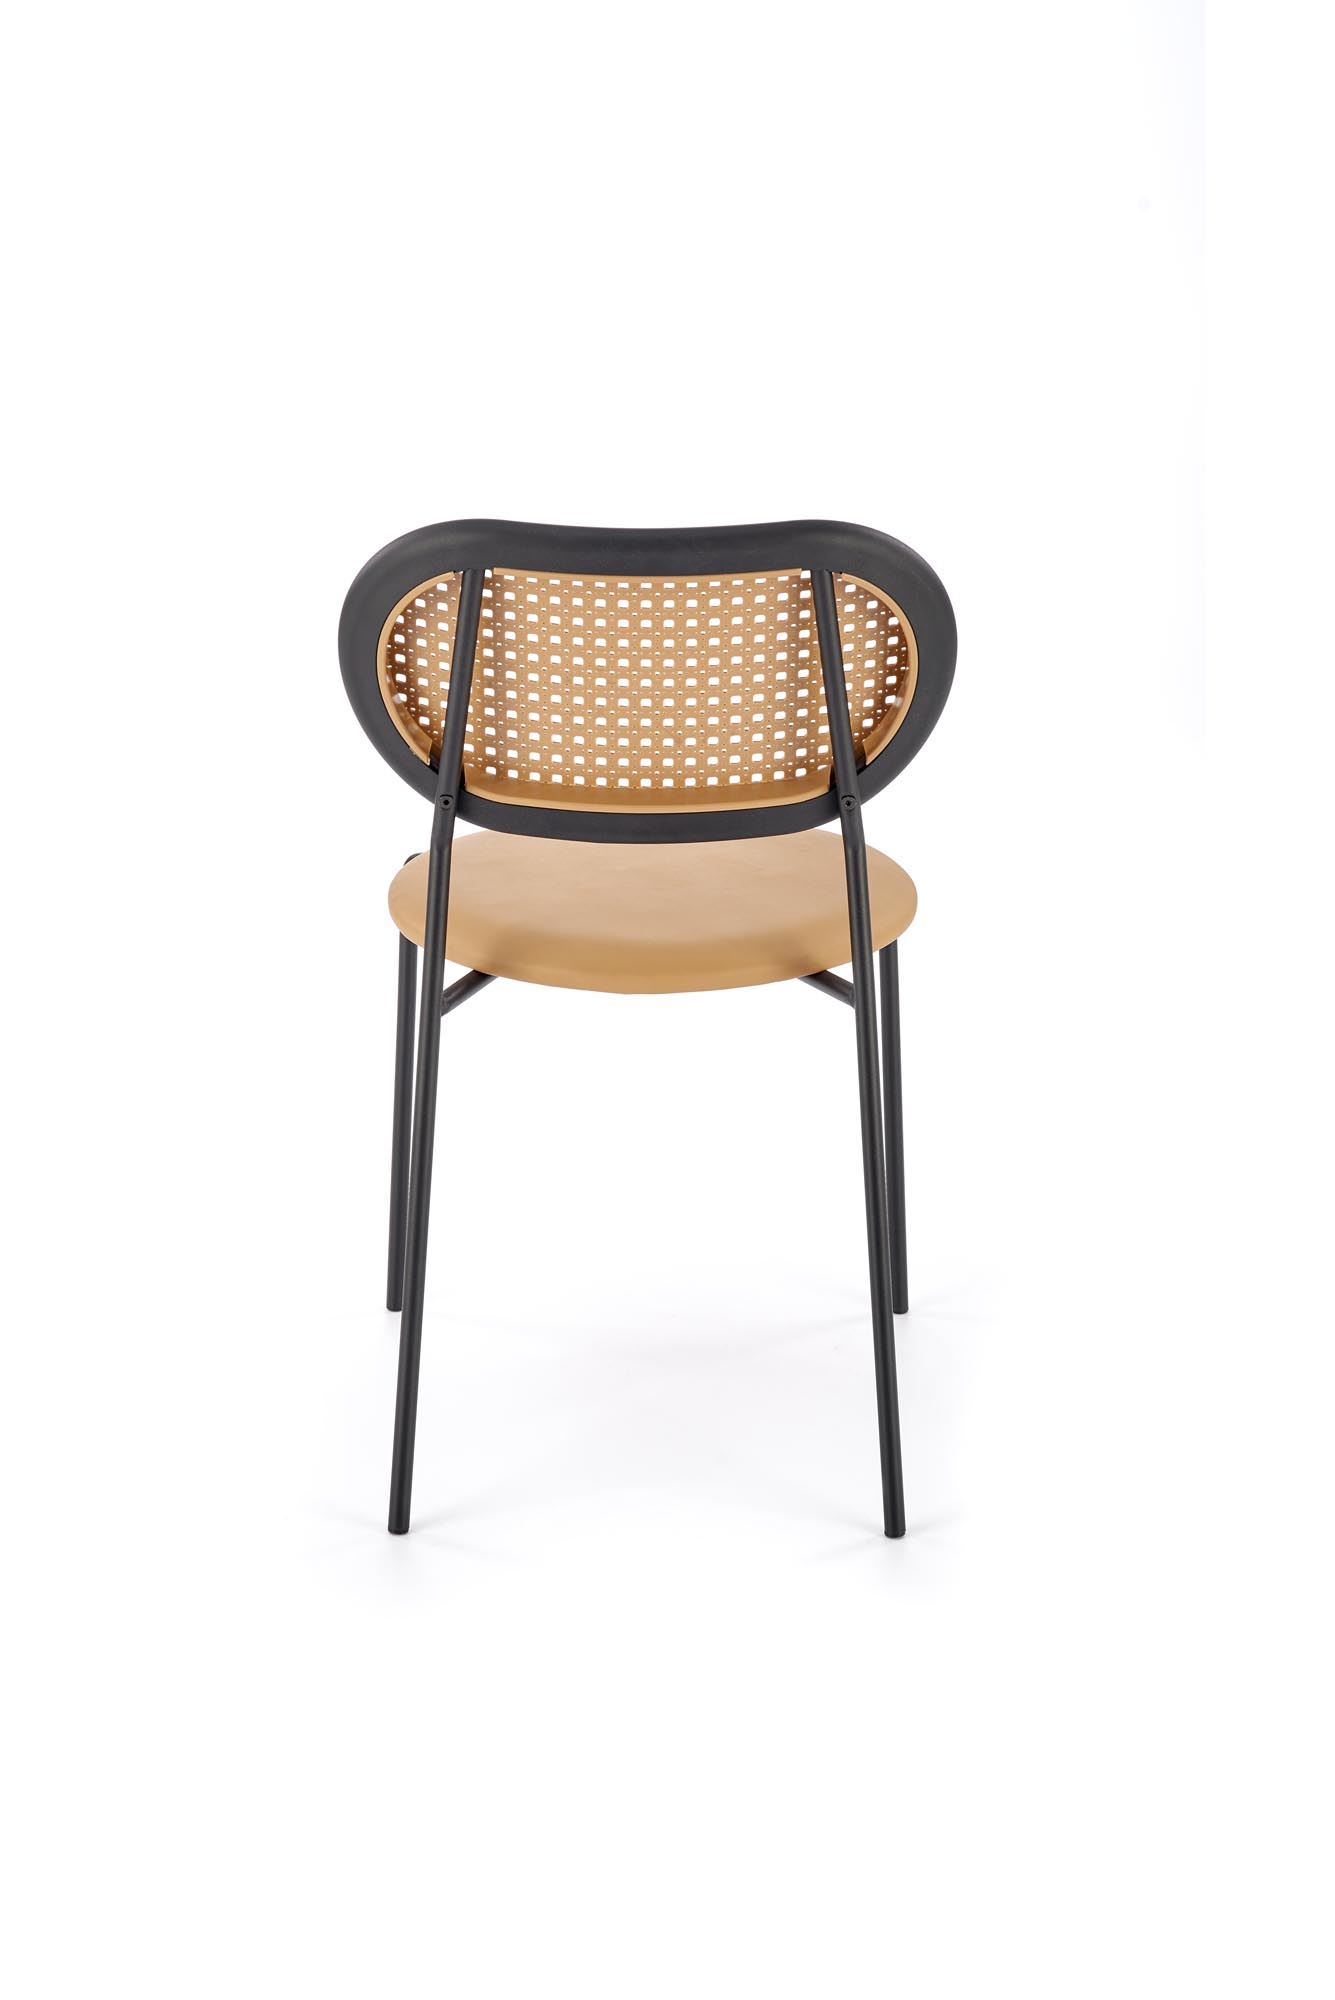 K524 Židle jasný Hnědý židle k524 - jasný Hnědý